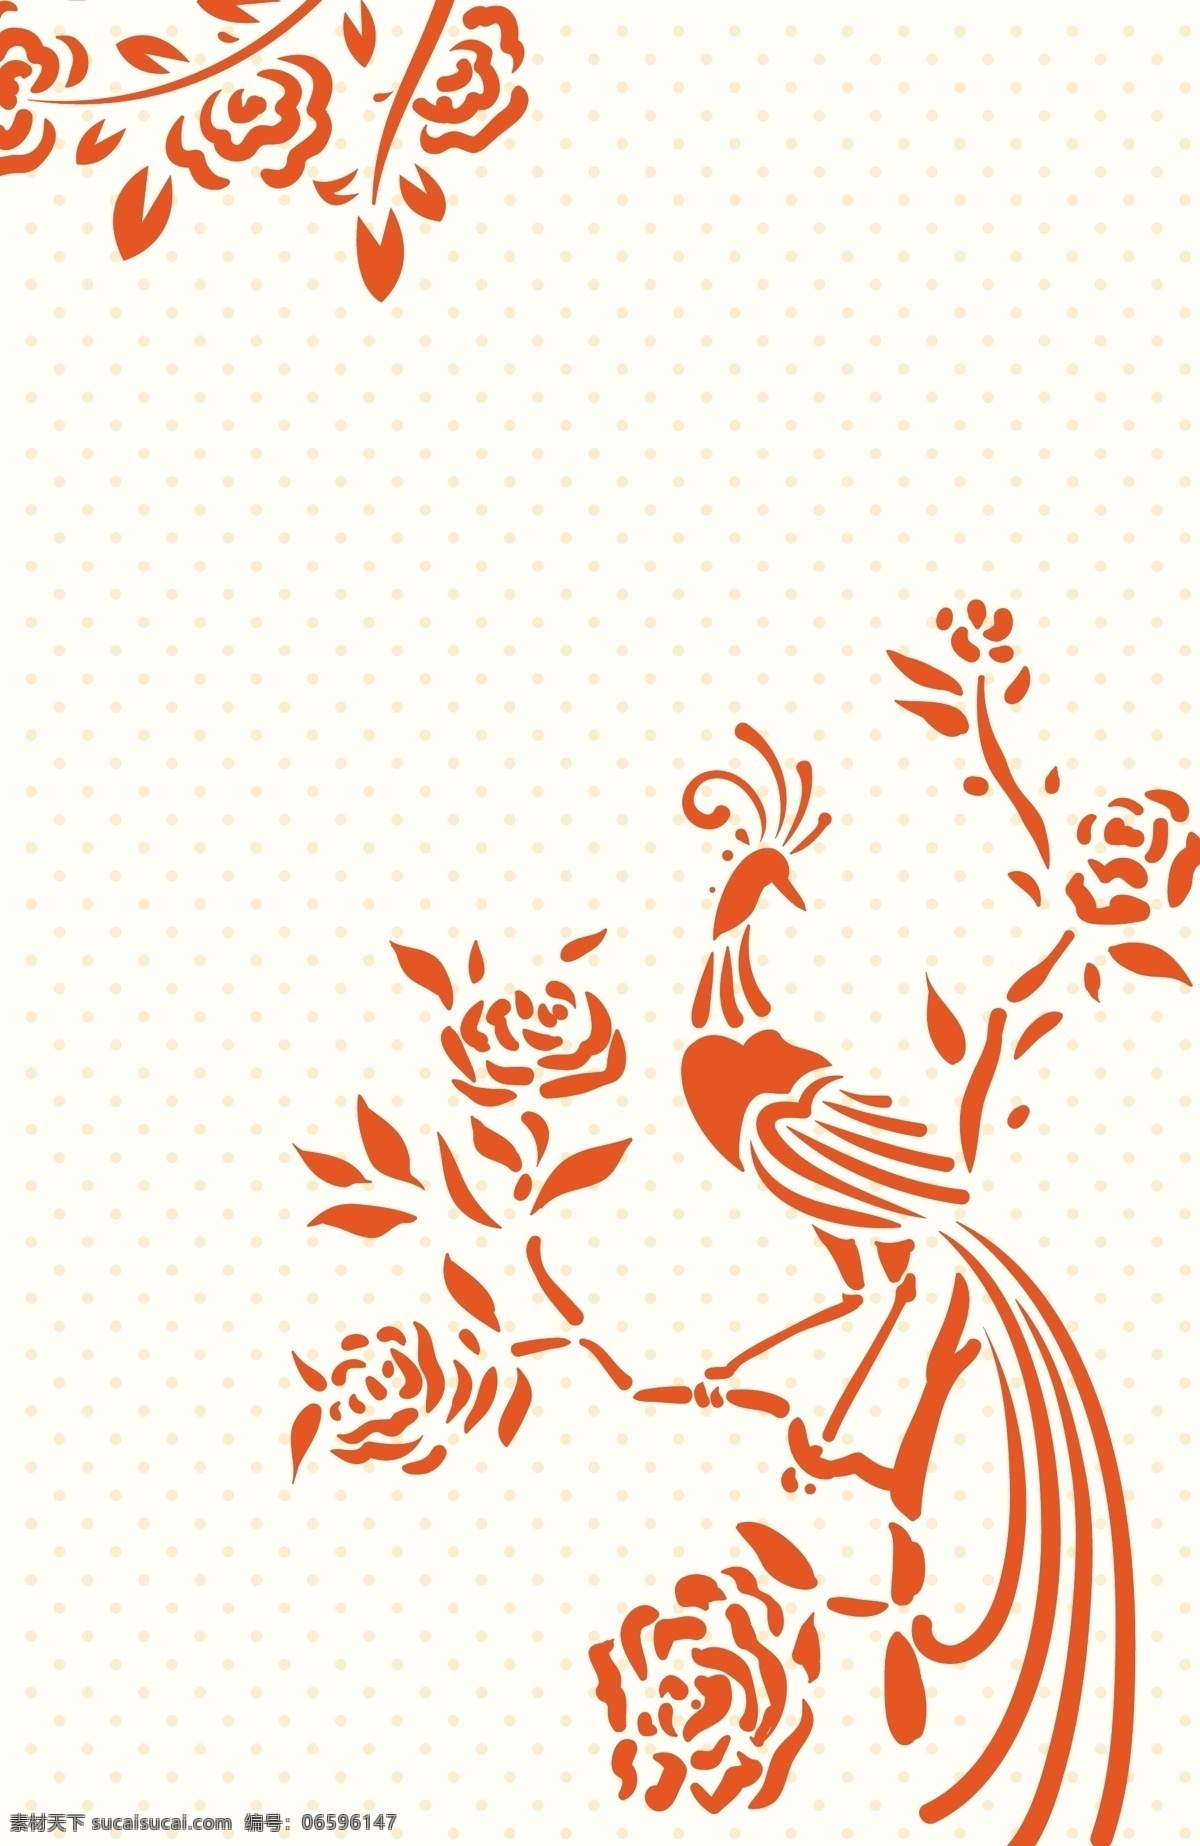 剪纸艺术 十二生肖 鸡 矢量 剪纸 红色 花朵 树枝 矢量背景 公鸡 广告背景